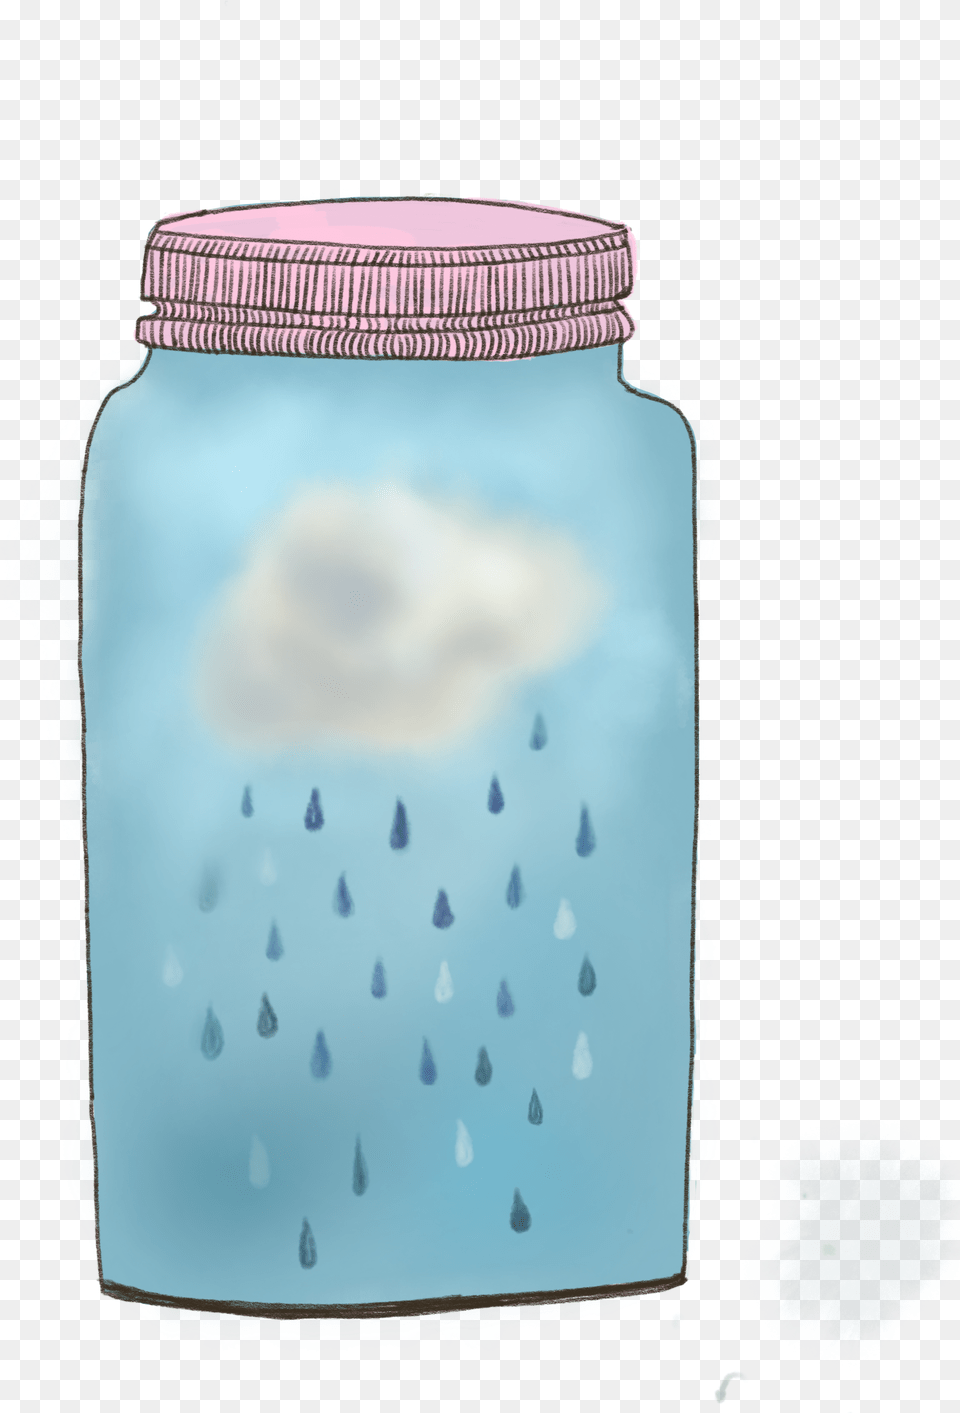 Falling Rain, Jar, Diaper Free Png